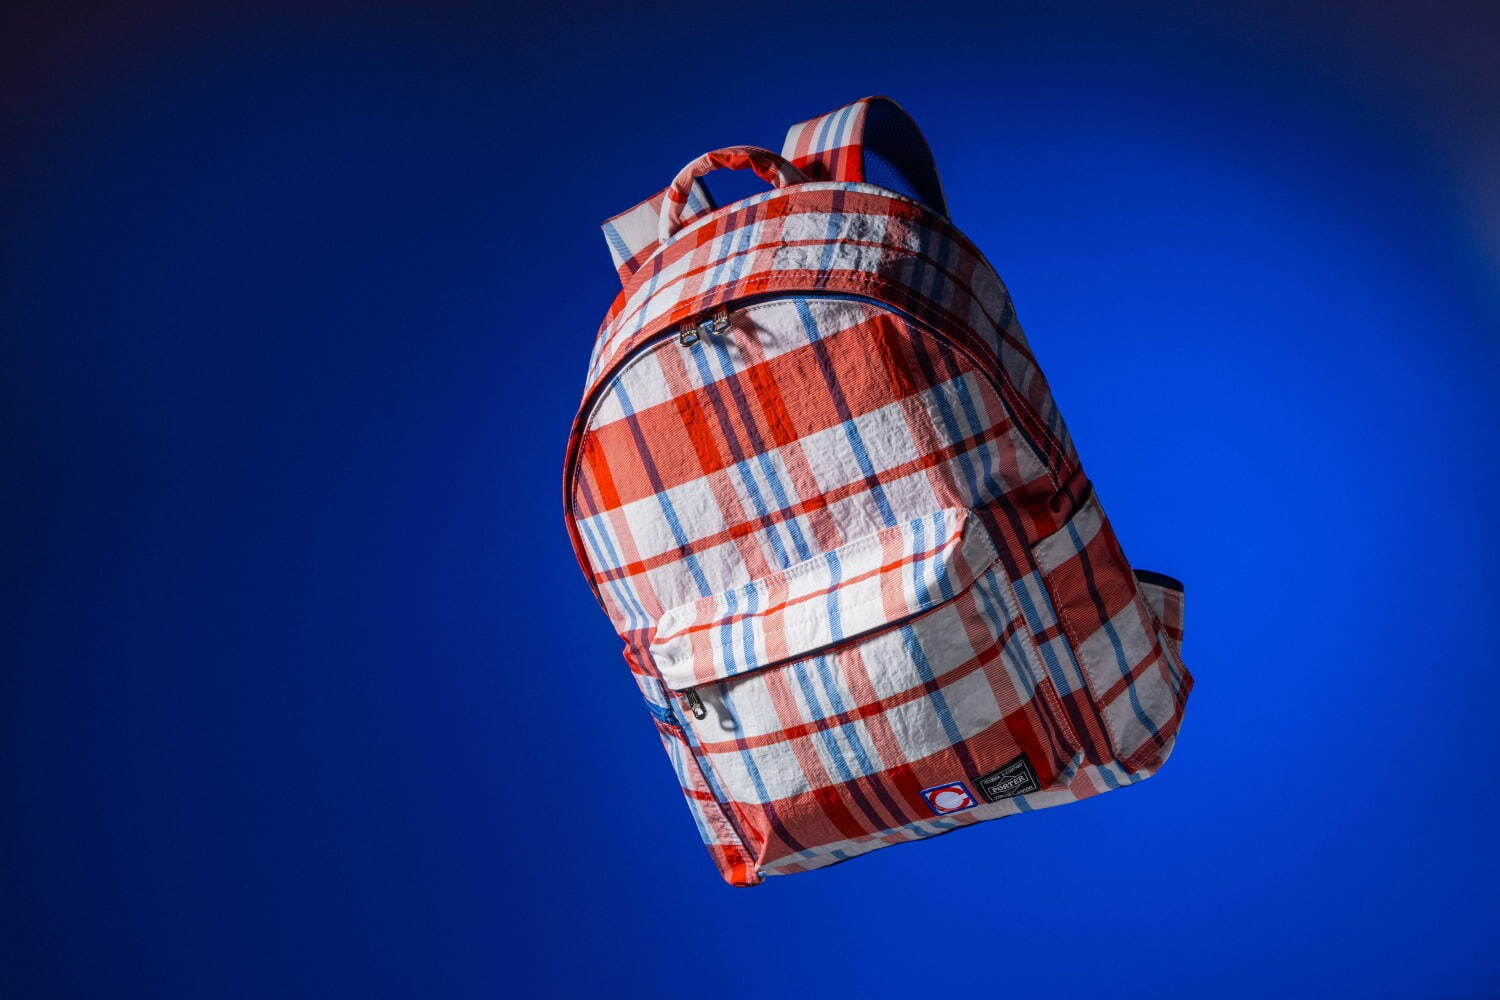 〈クロット×ポーター〉香港の伝統的なバッグ着想、チェック柄バックパック